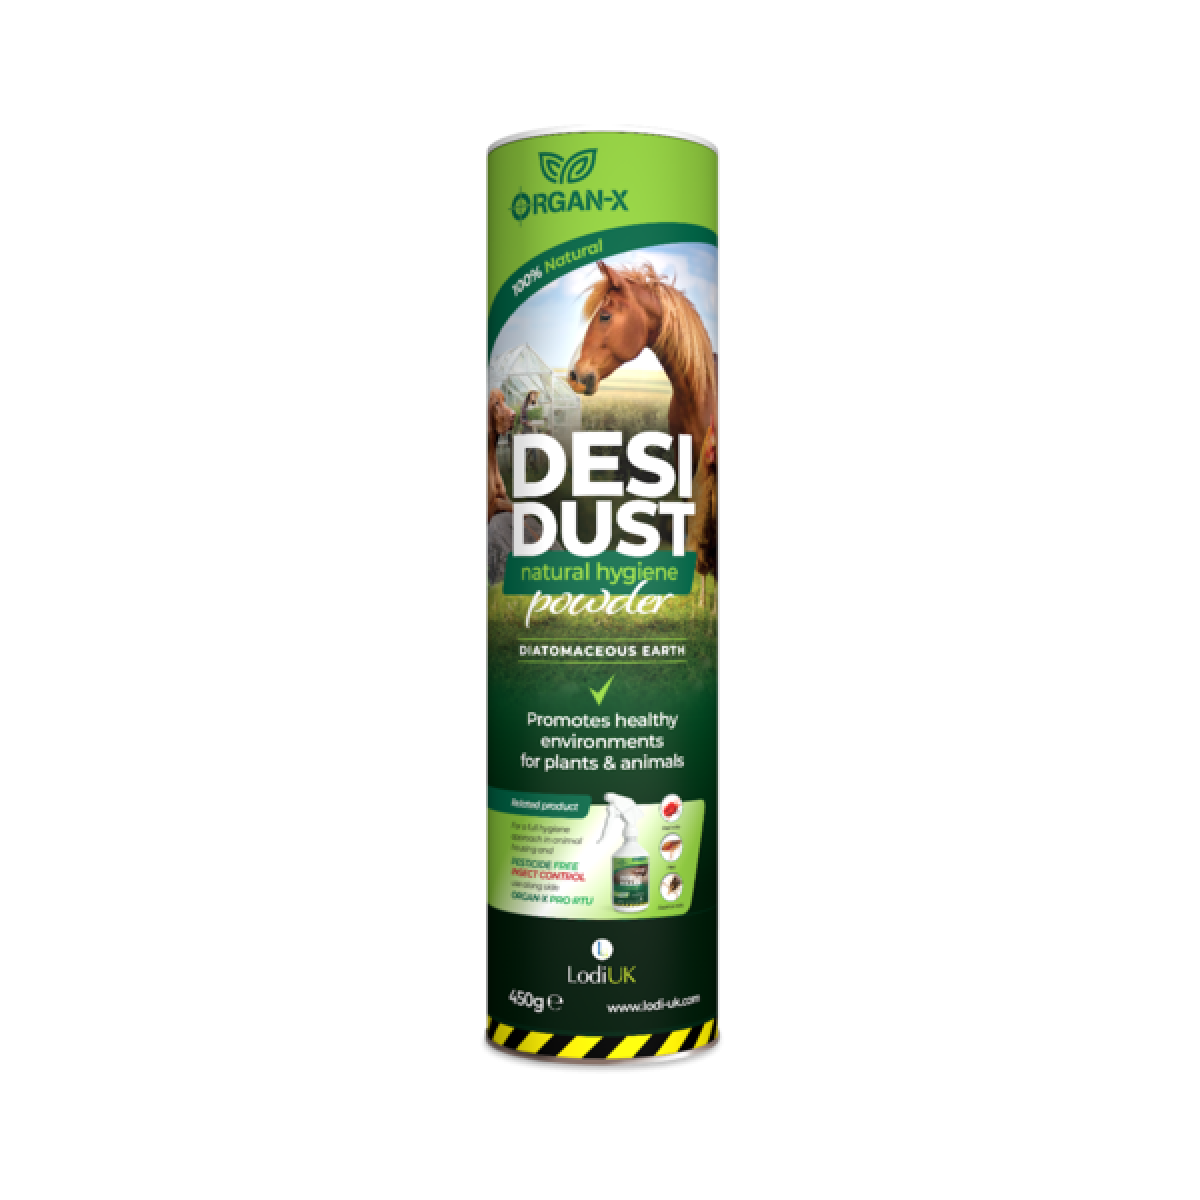 Organ-X Desi Dust 450g